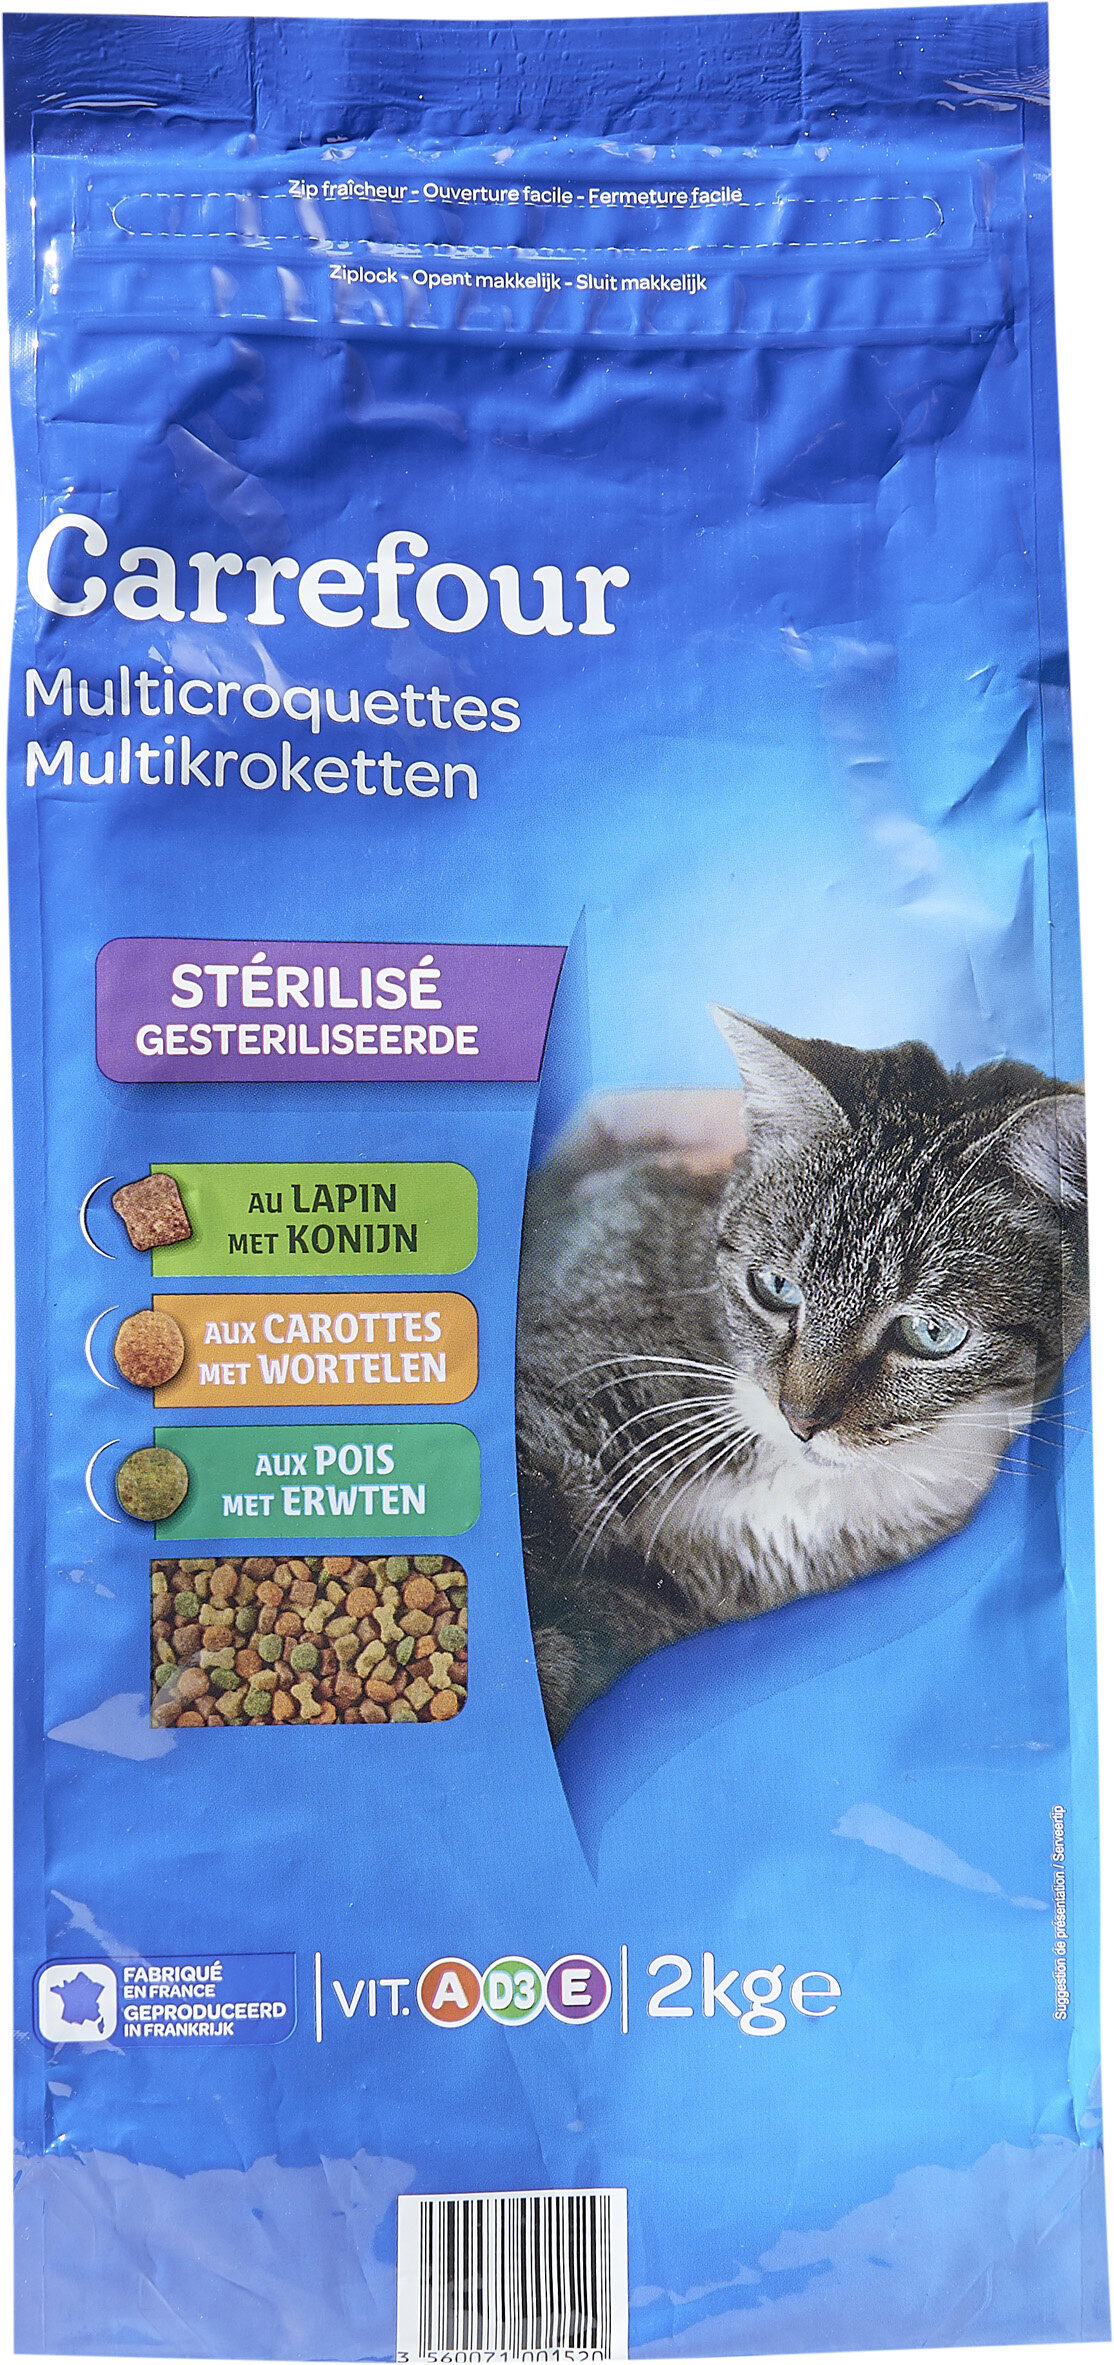 Multicroquettes Stérilisé - Product - fr